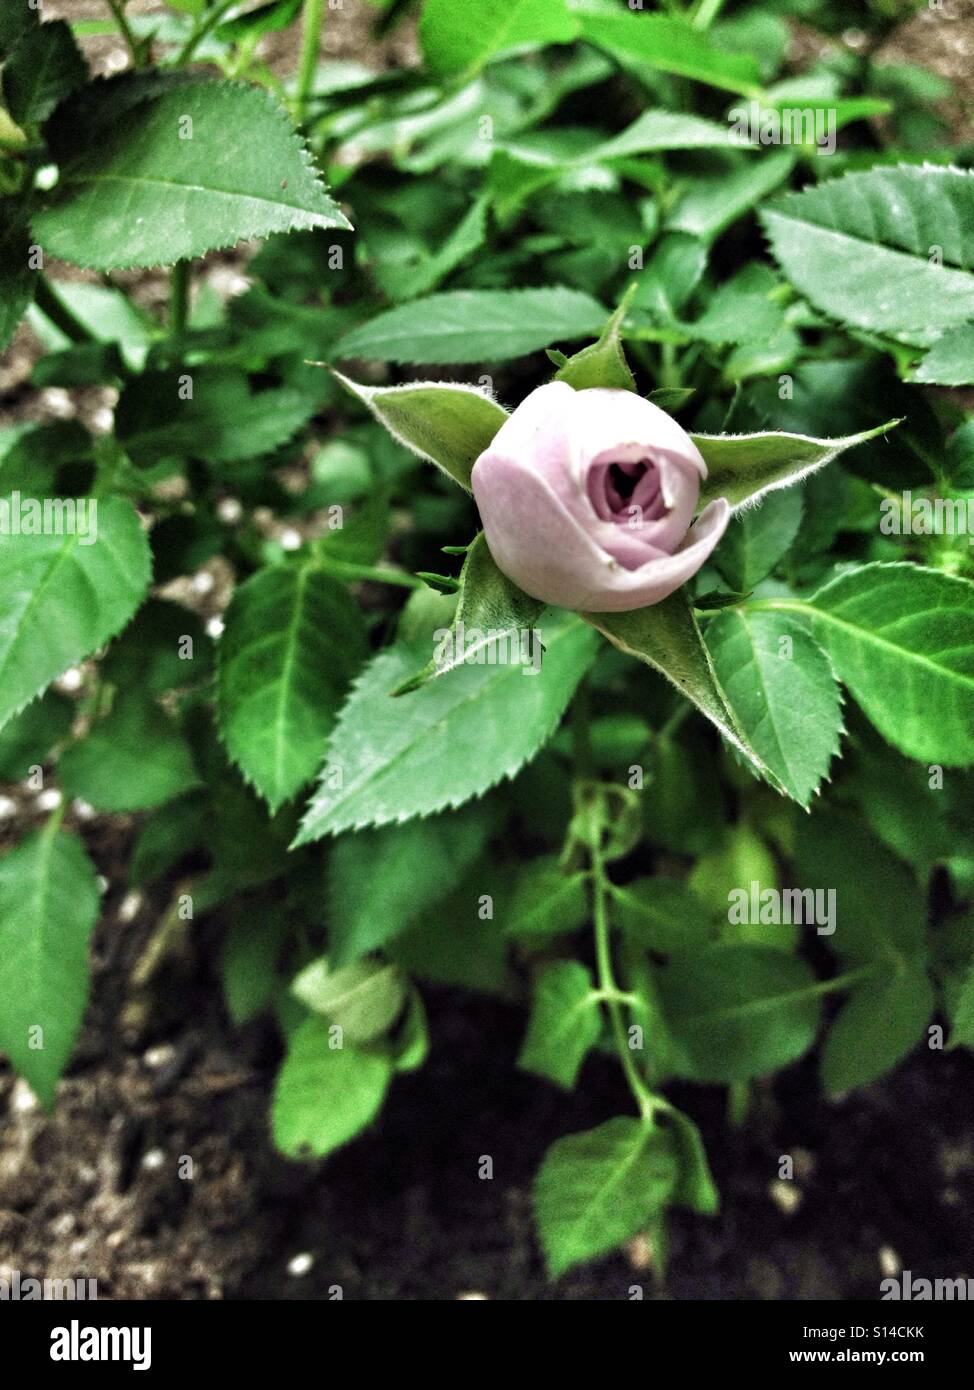 Rosa bocciolo di rosa in fiore e FIORE In giardino verde con foglie Foto Stock